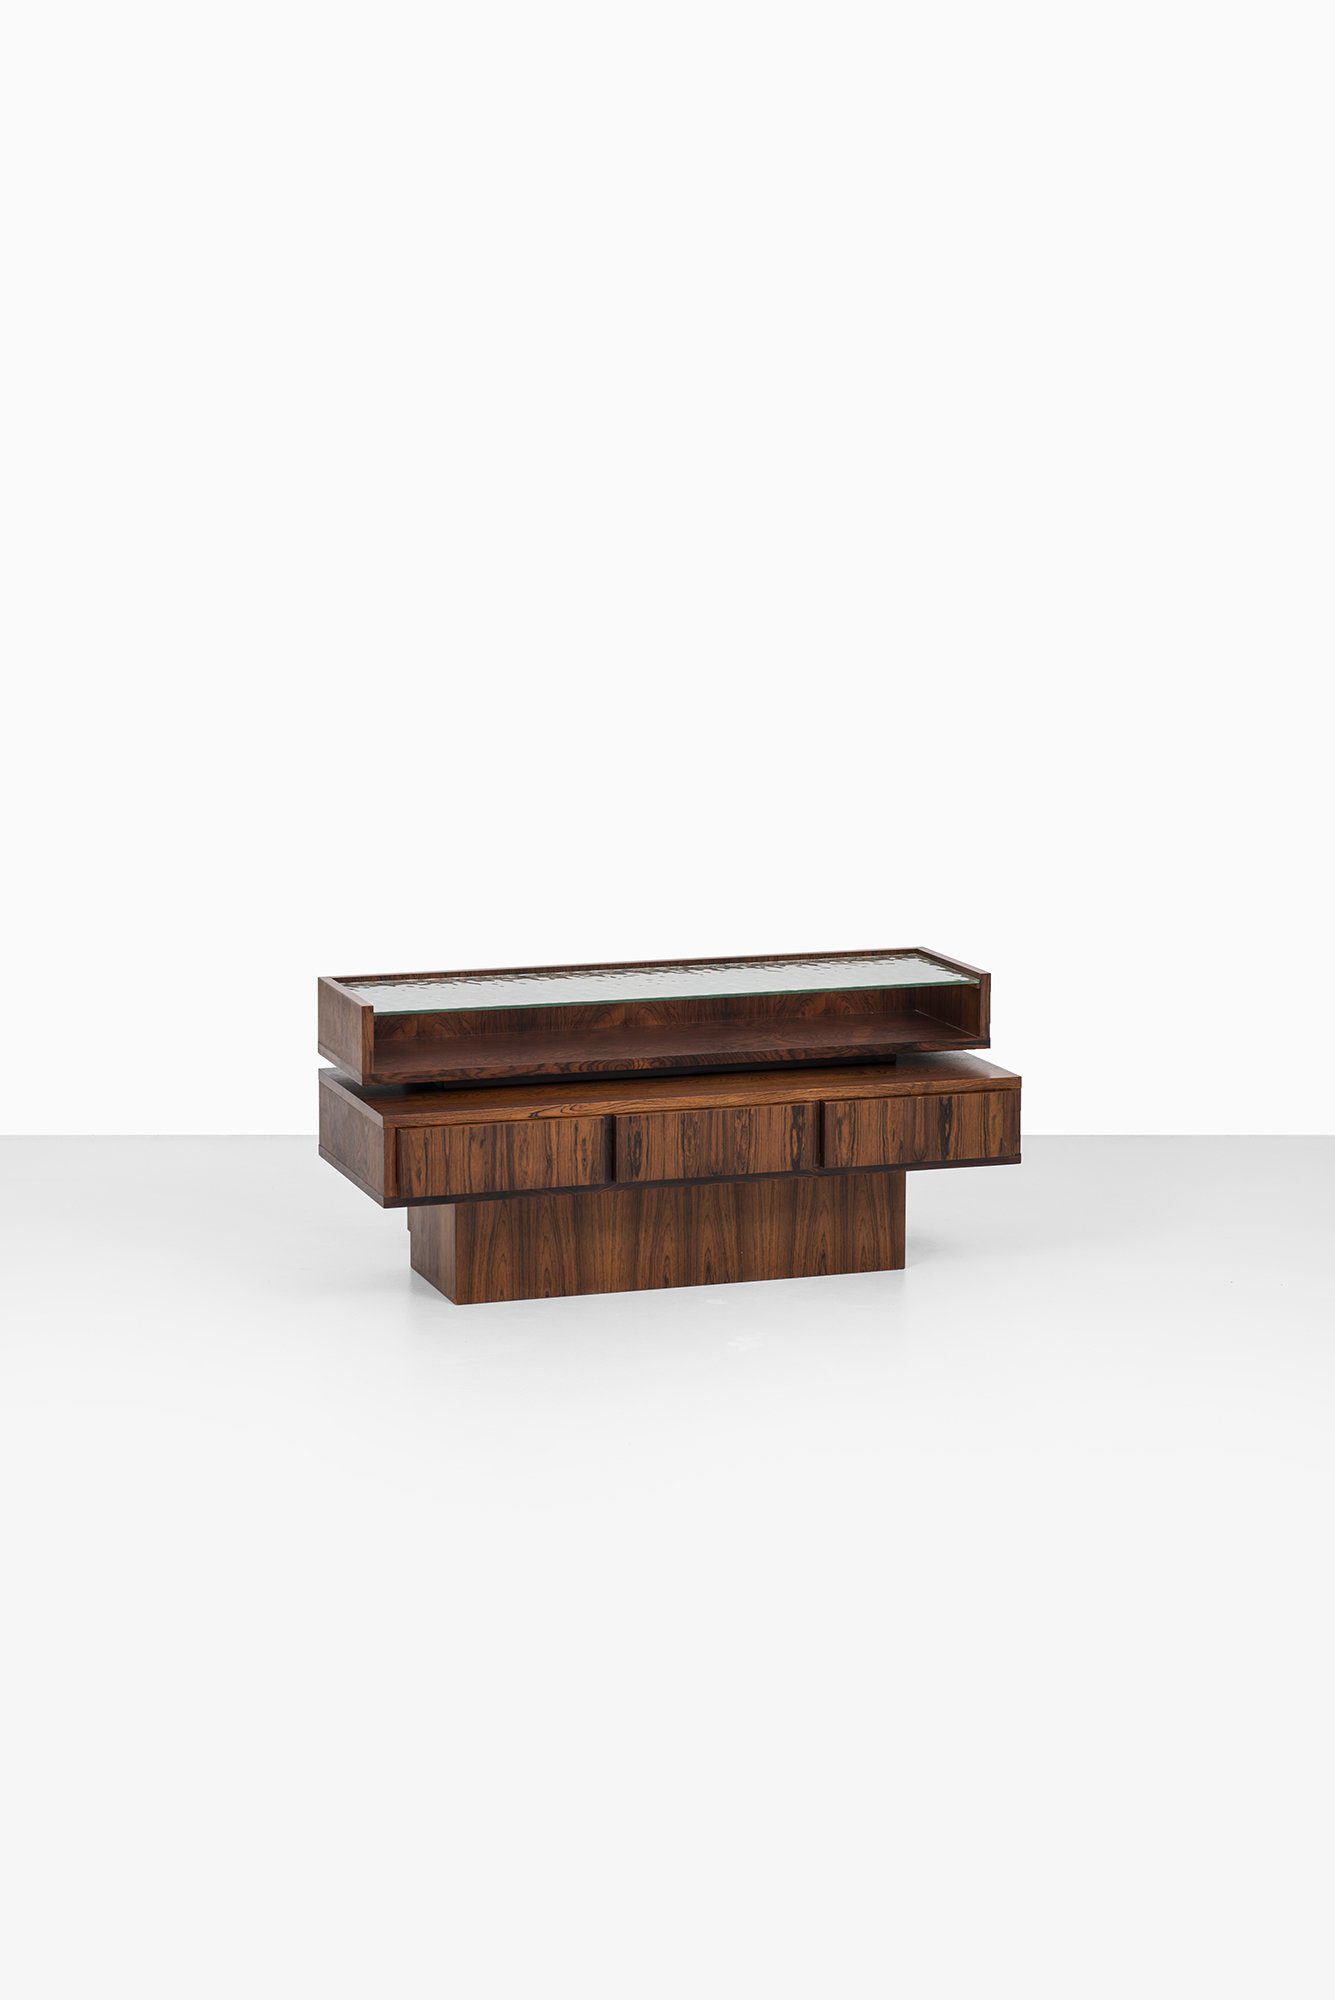 Rosewood drawer in the manner of Ib Kofod-Larsen at Studio Schalling